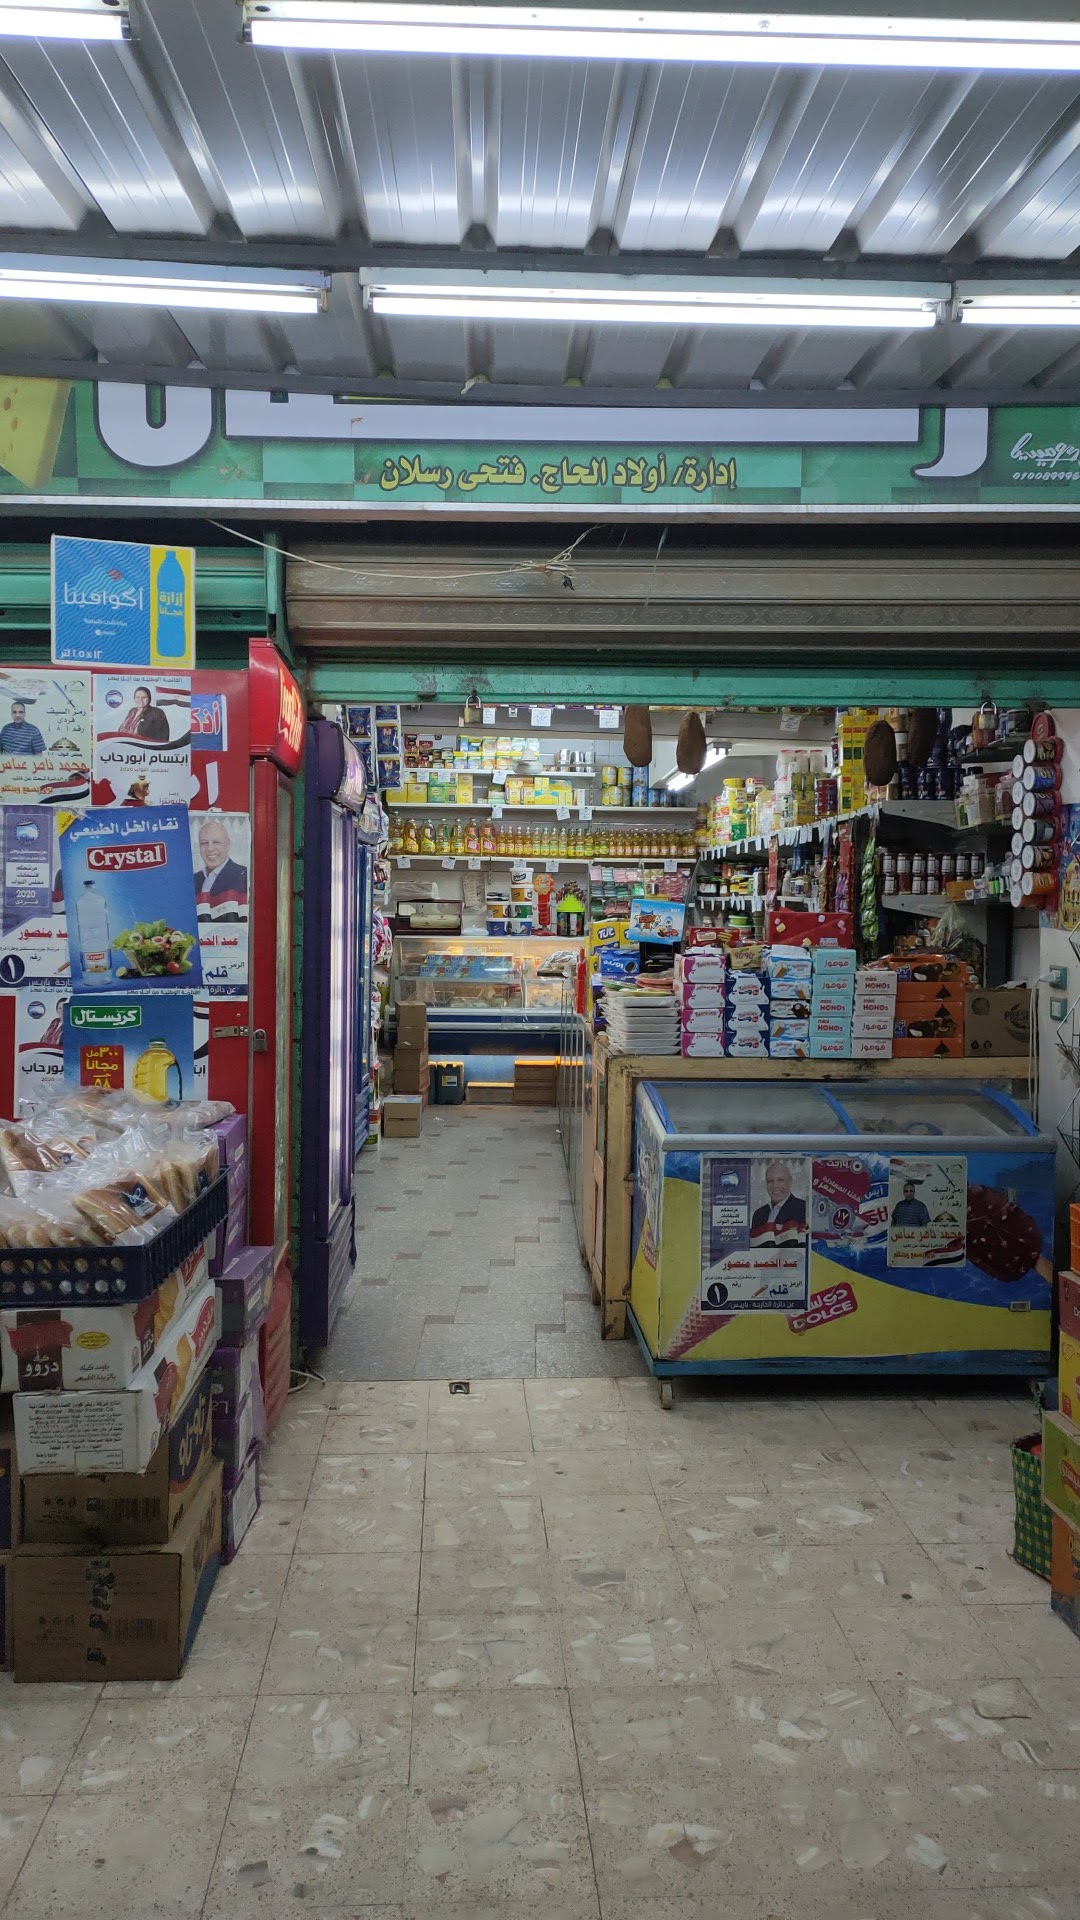 Raslan market